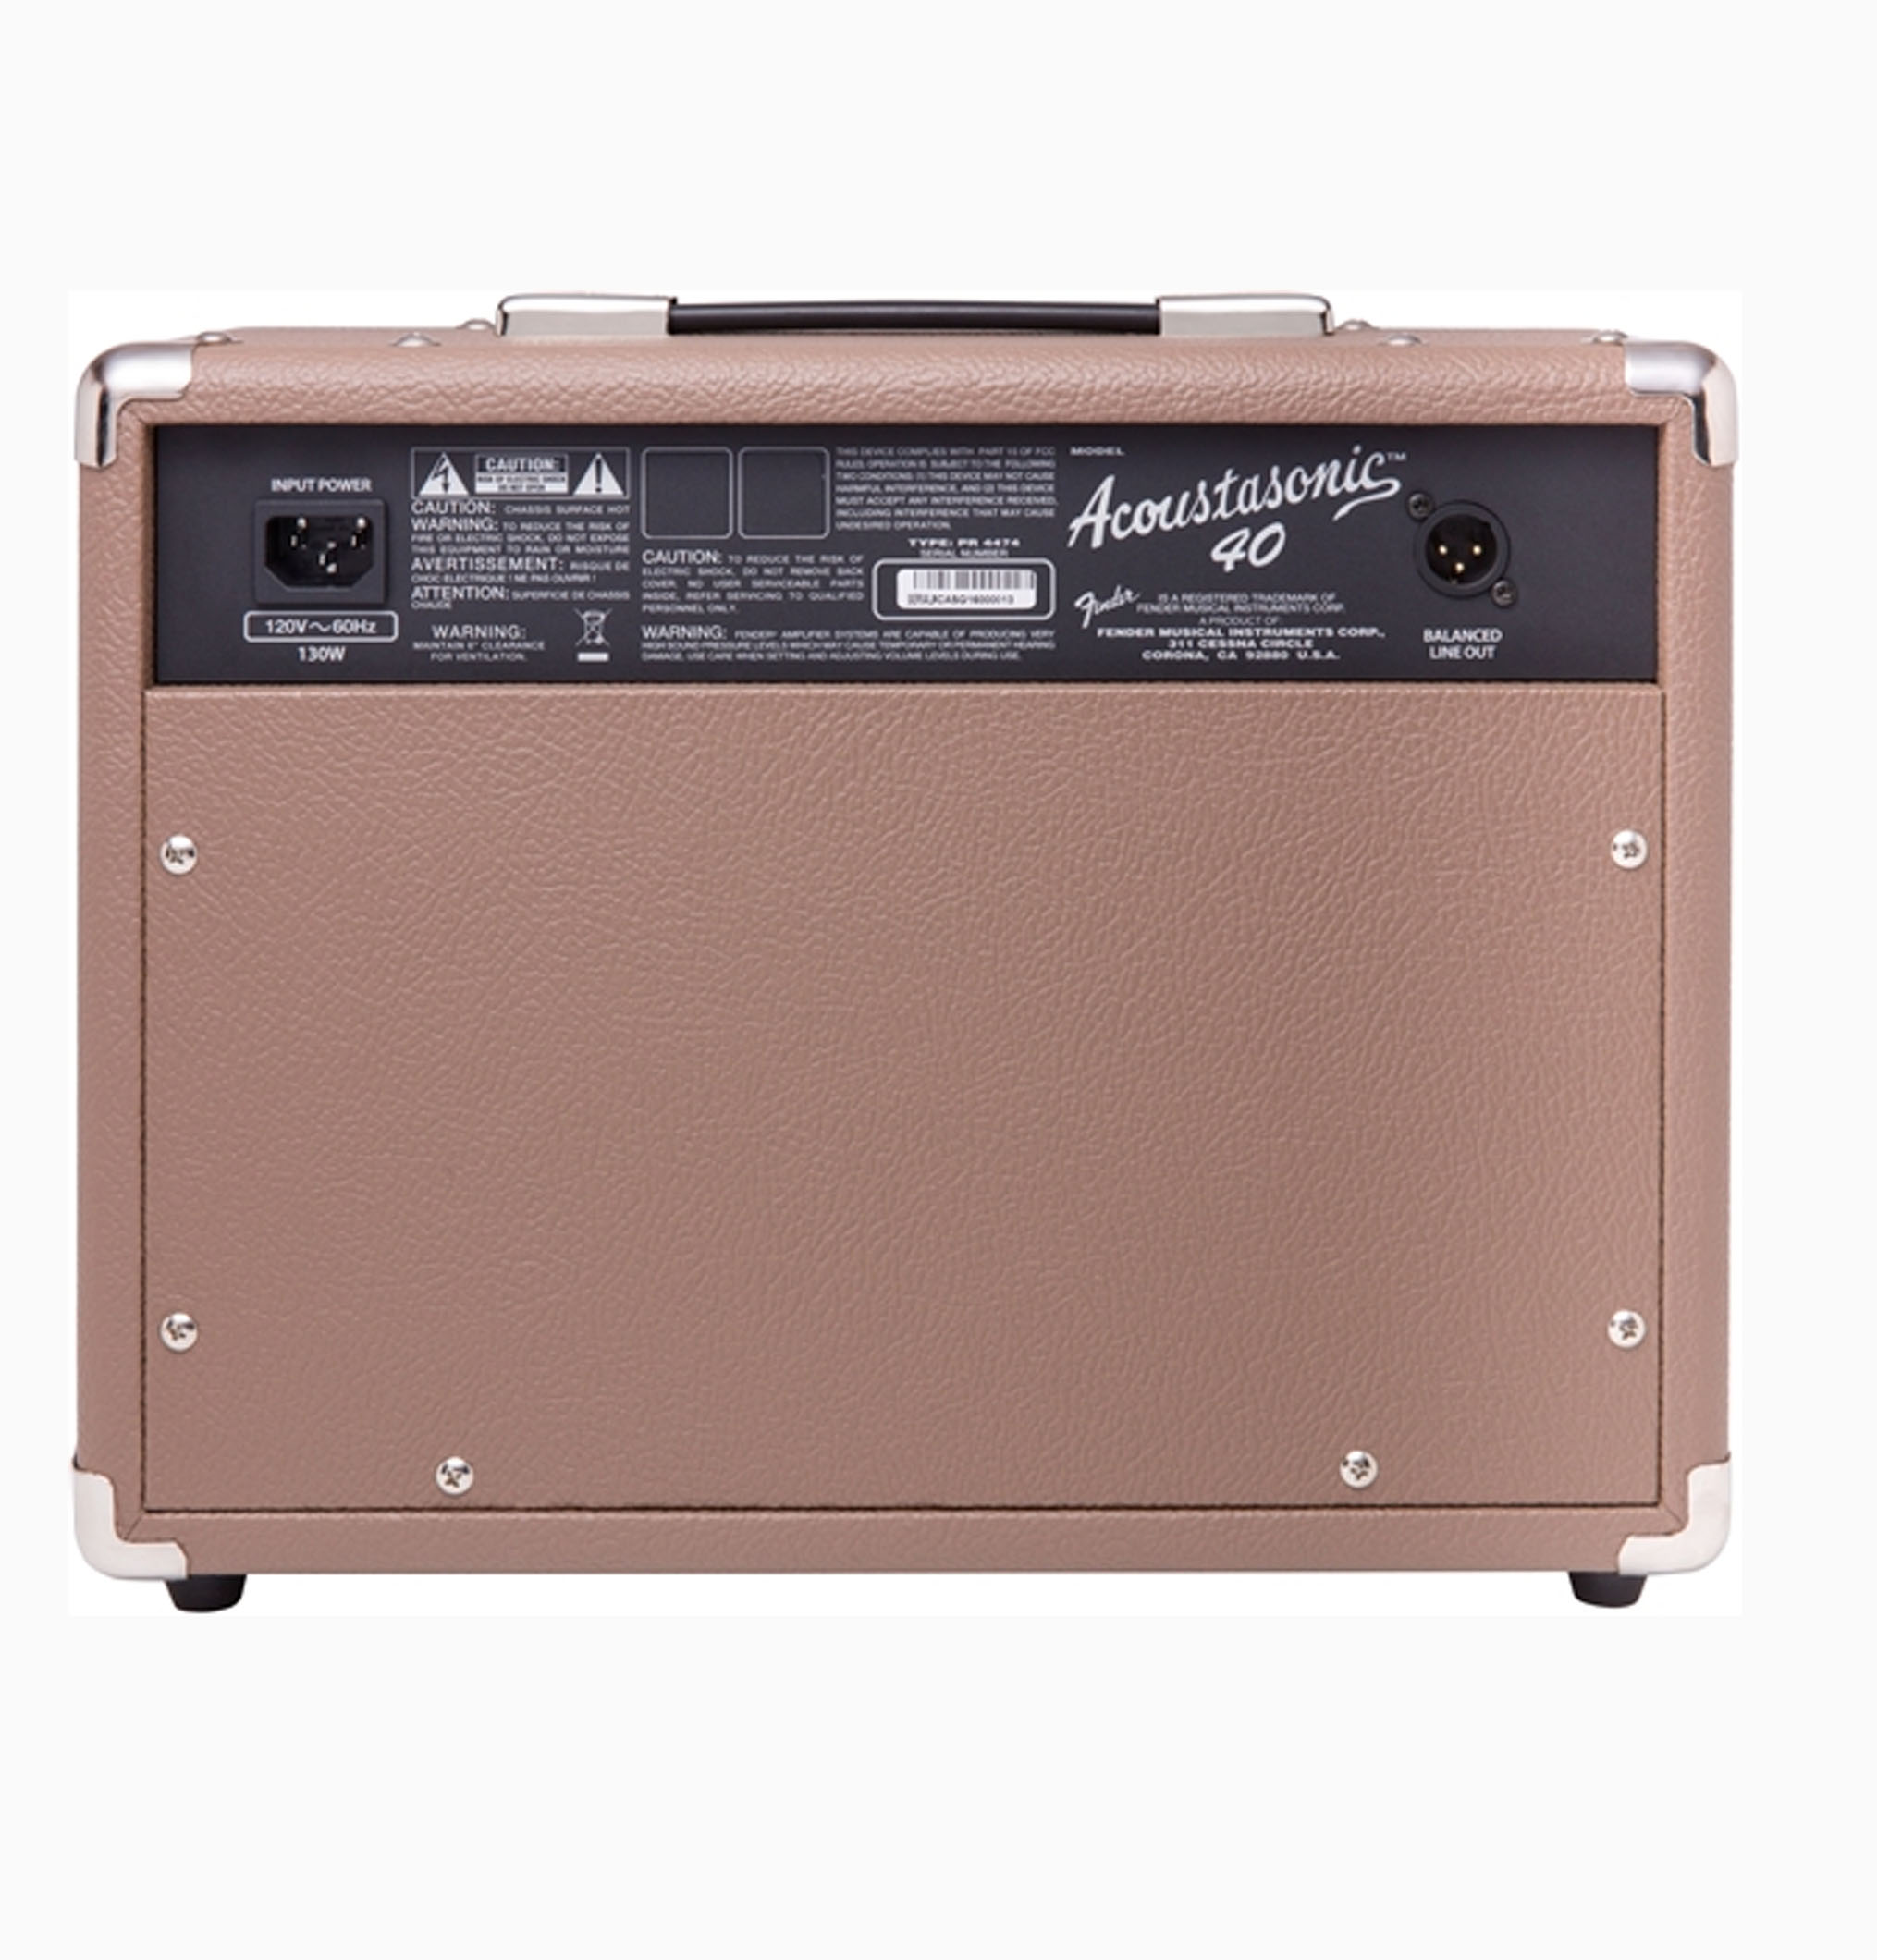 Amplifier Fender Acoustasonic 40W 230v EU DS hính chãng hãng